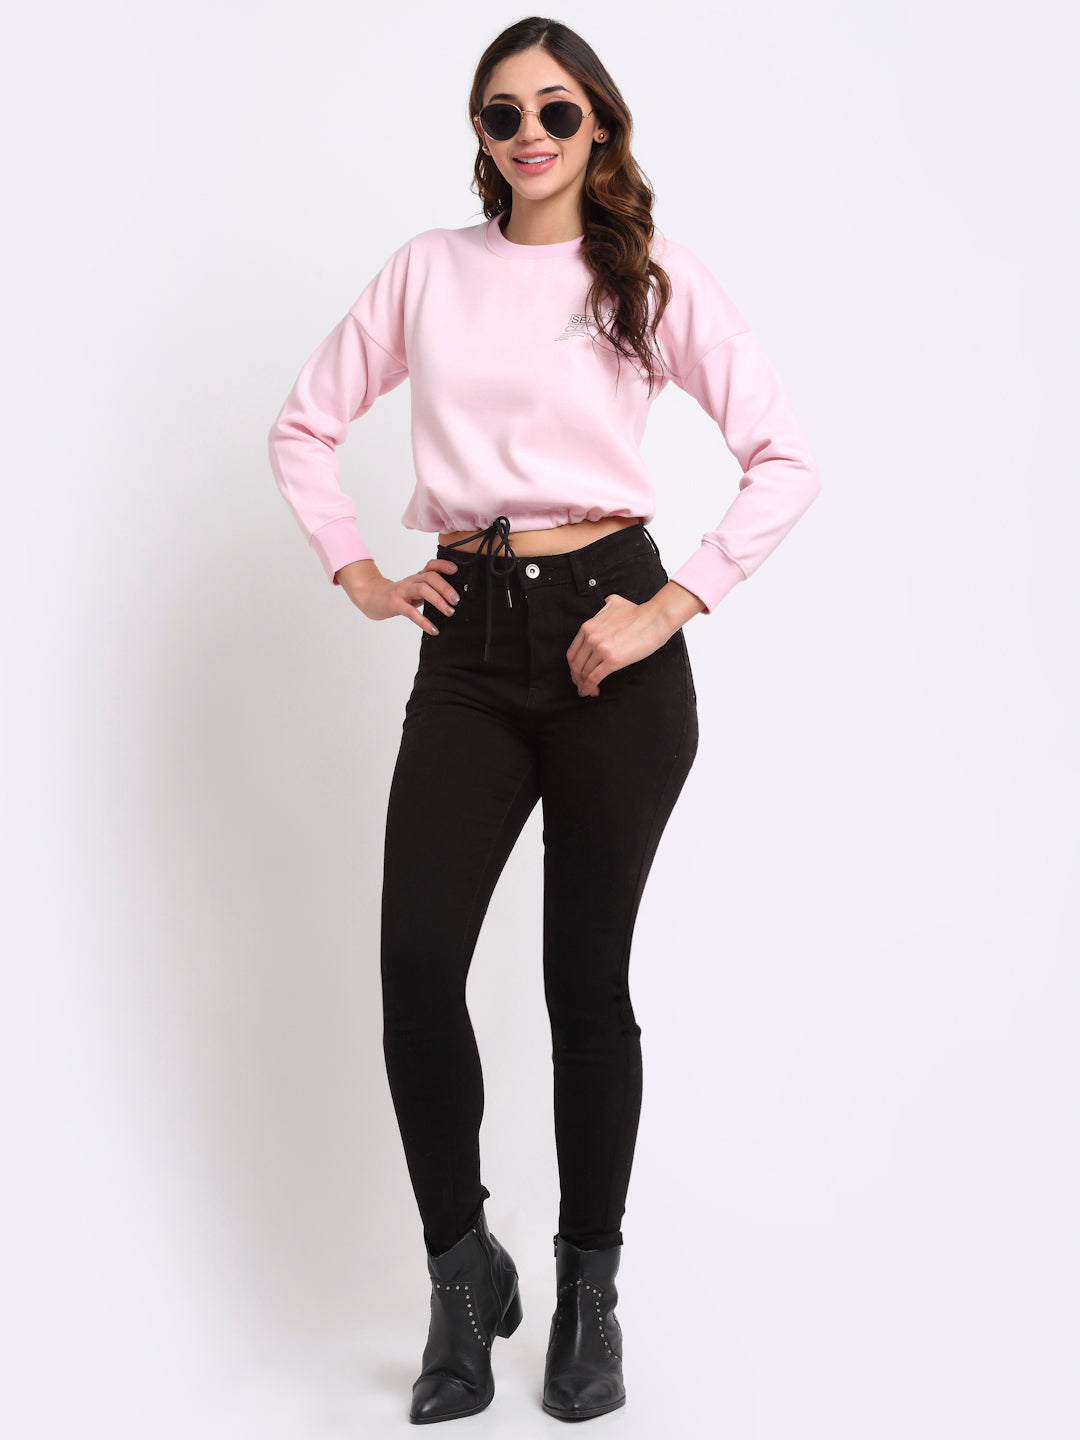 Women Pink Solid Hosiery Sweatshirt